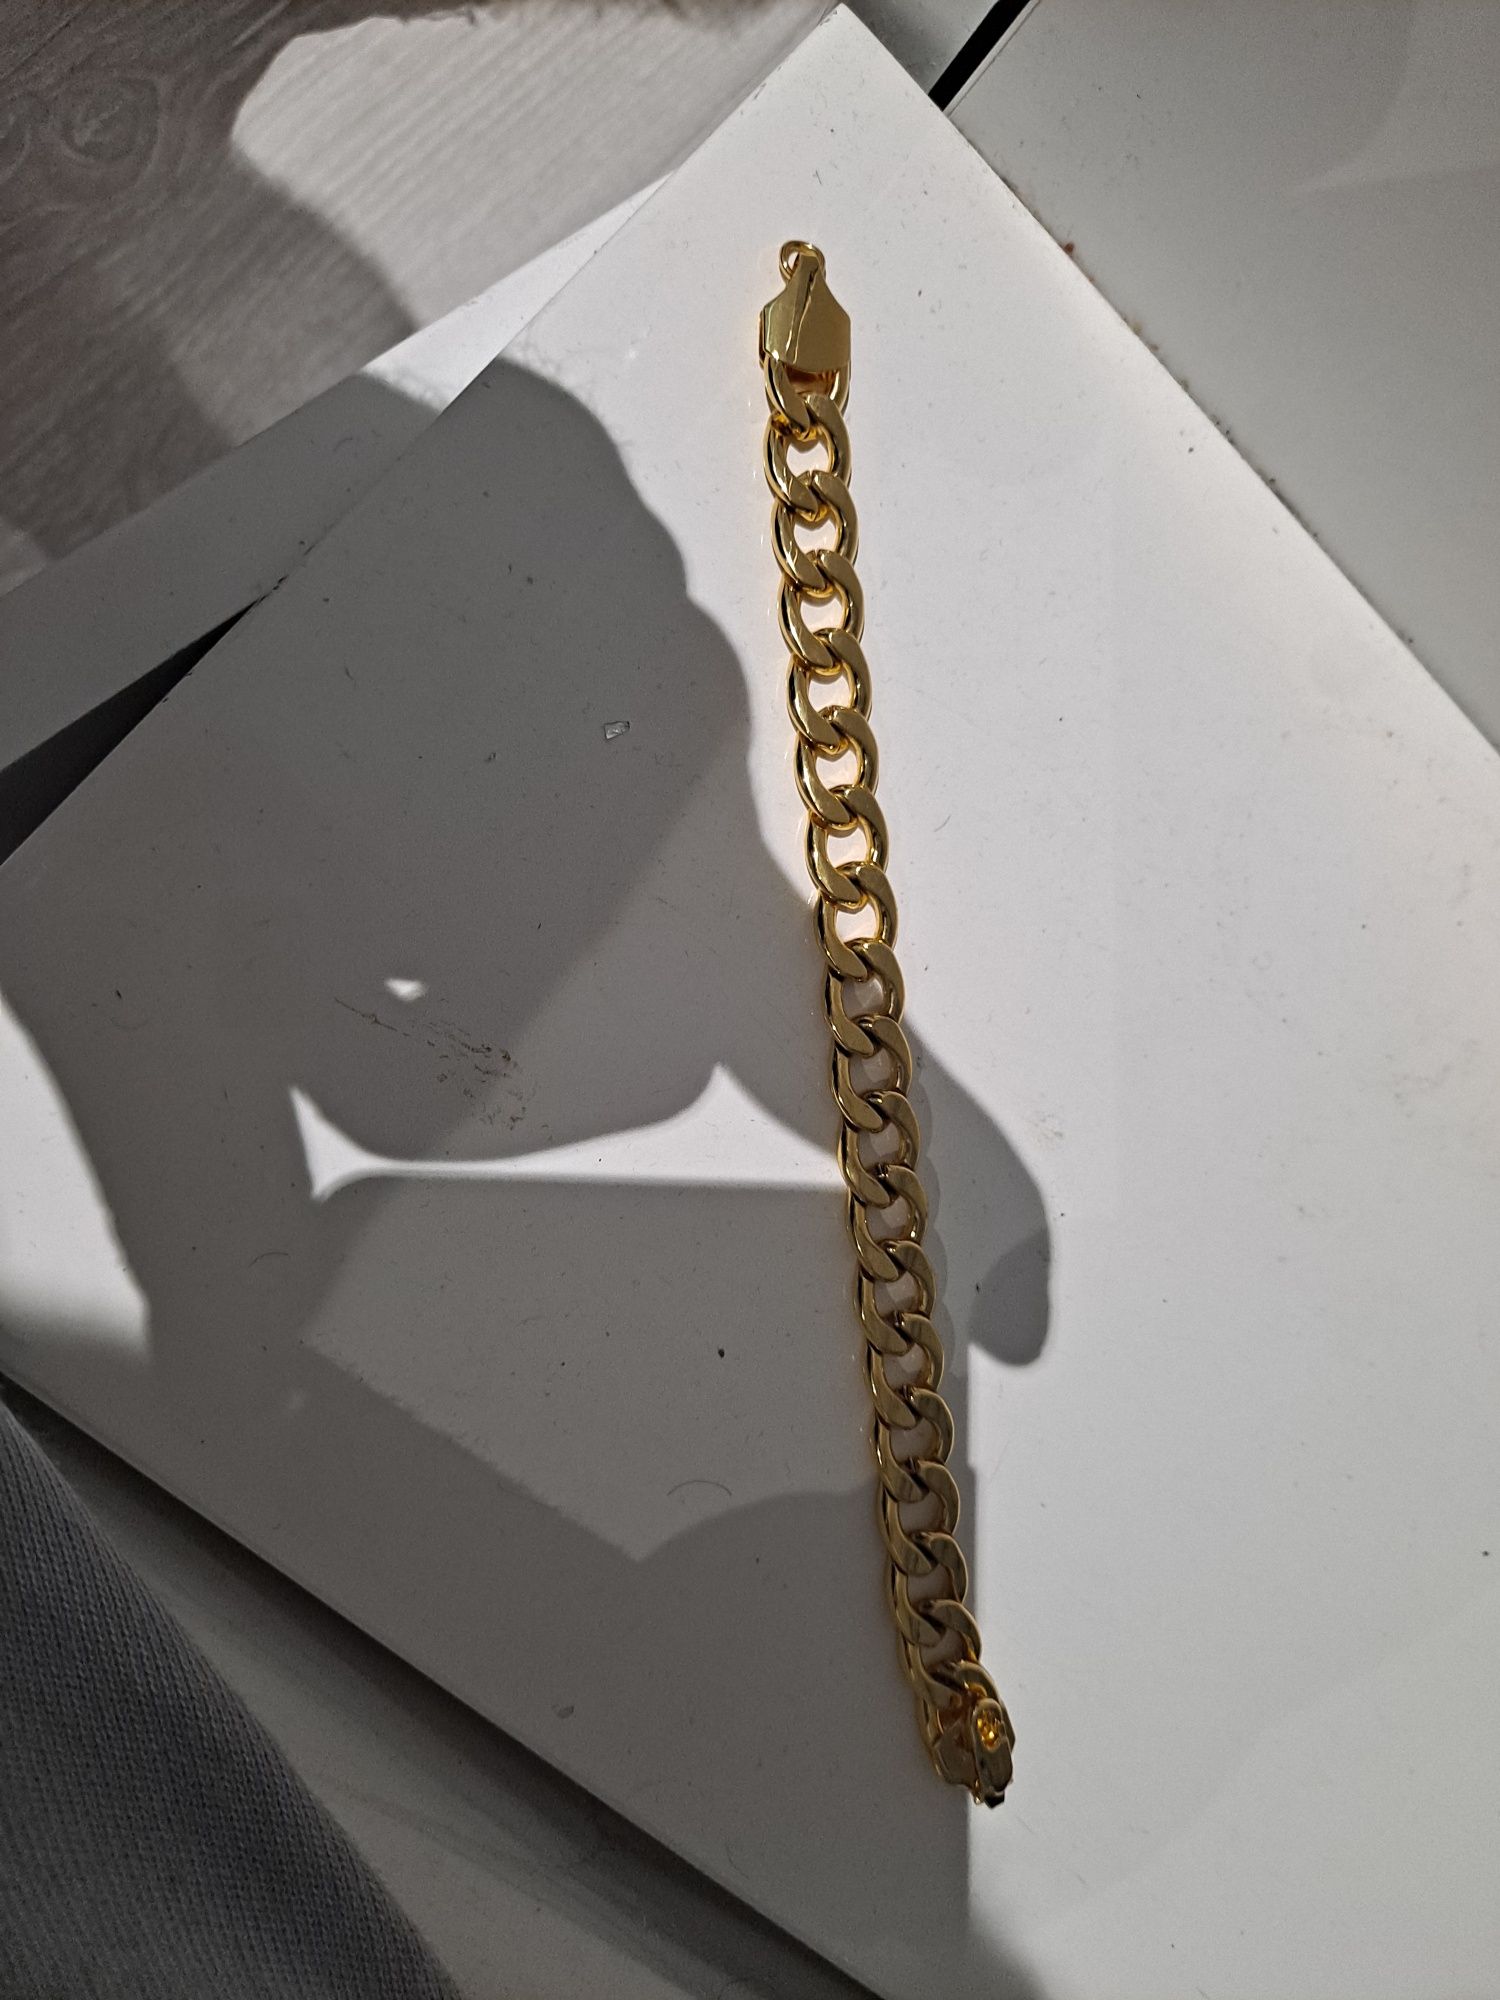 łańcuszek złoty  wraz z bransoletą  próba 18k